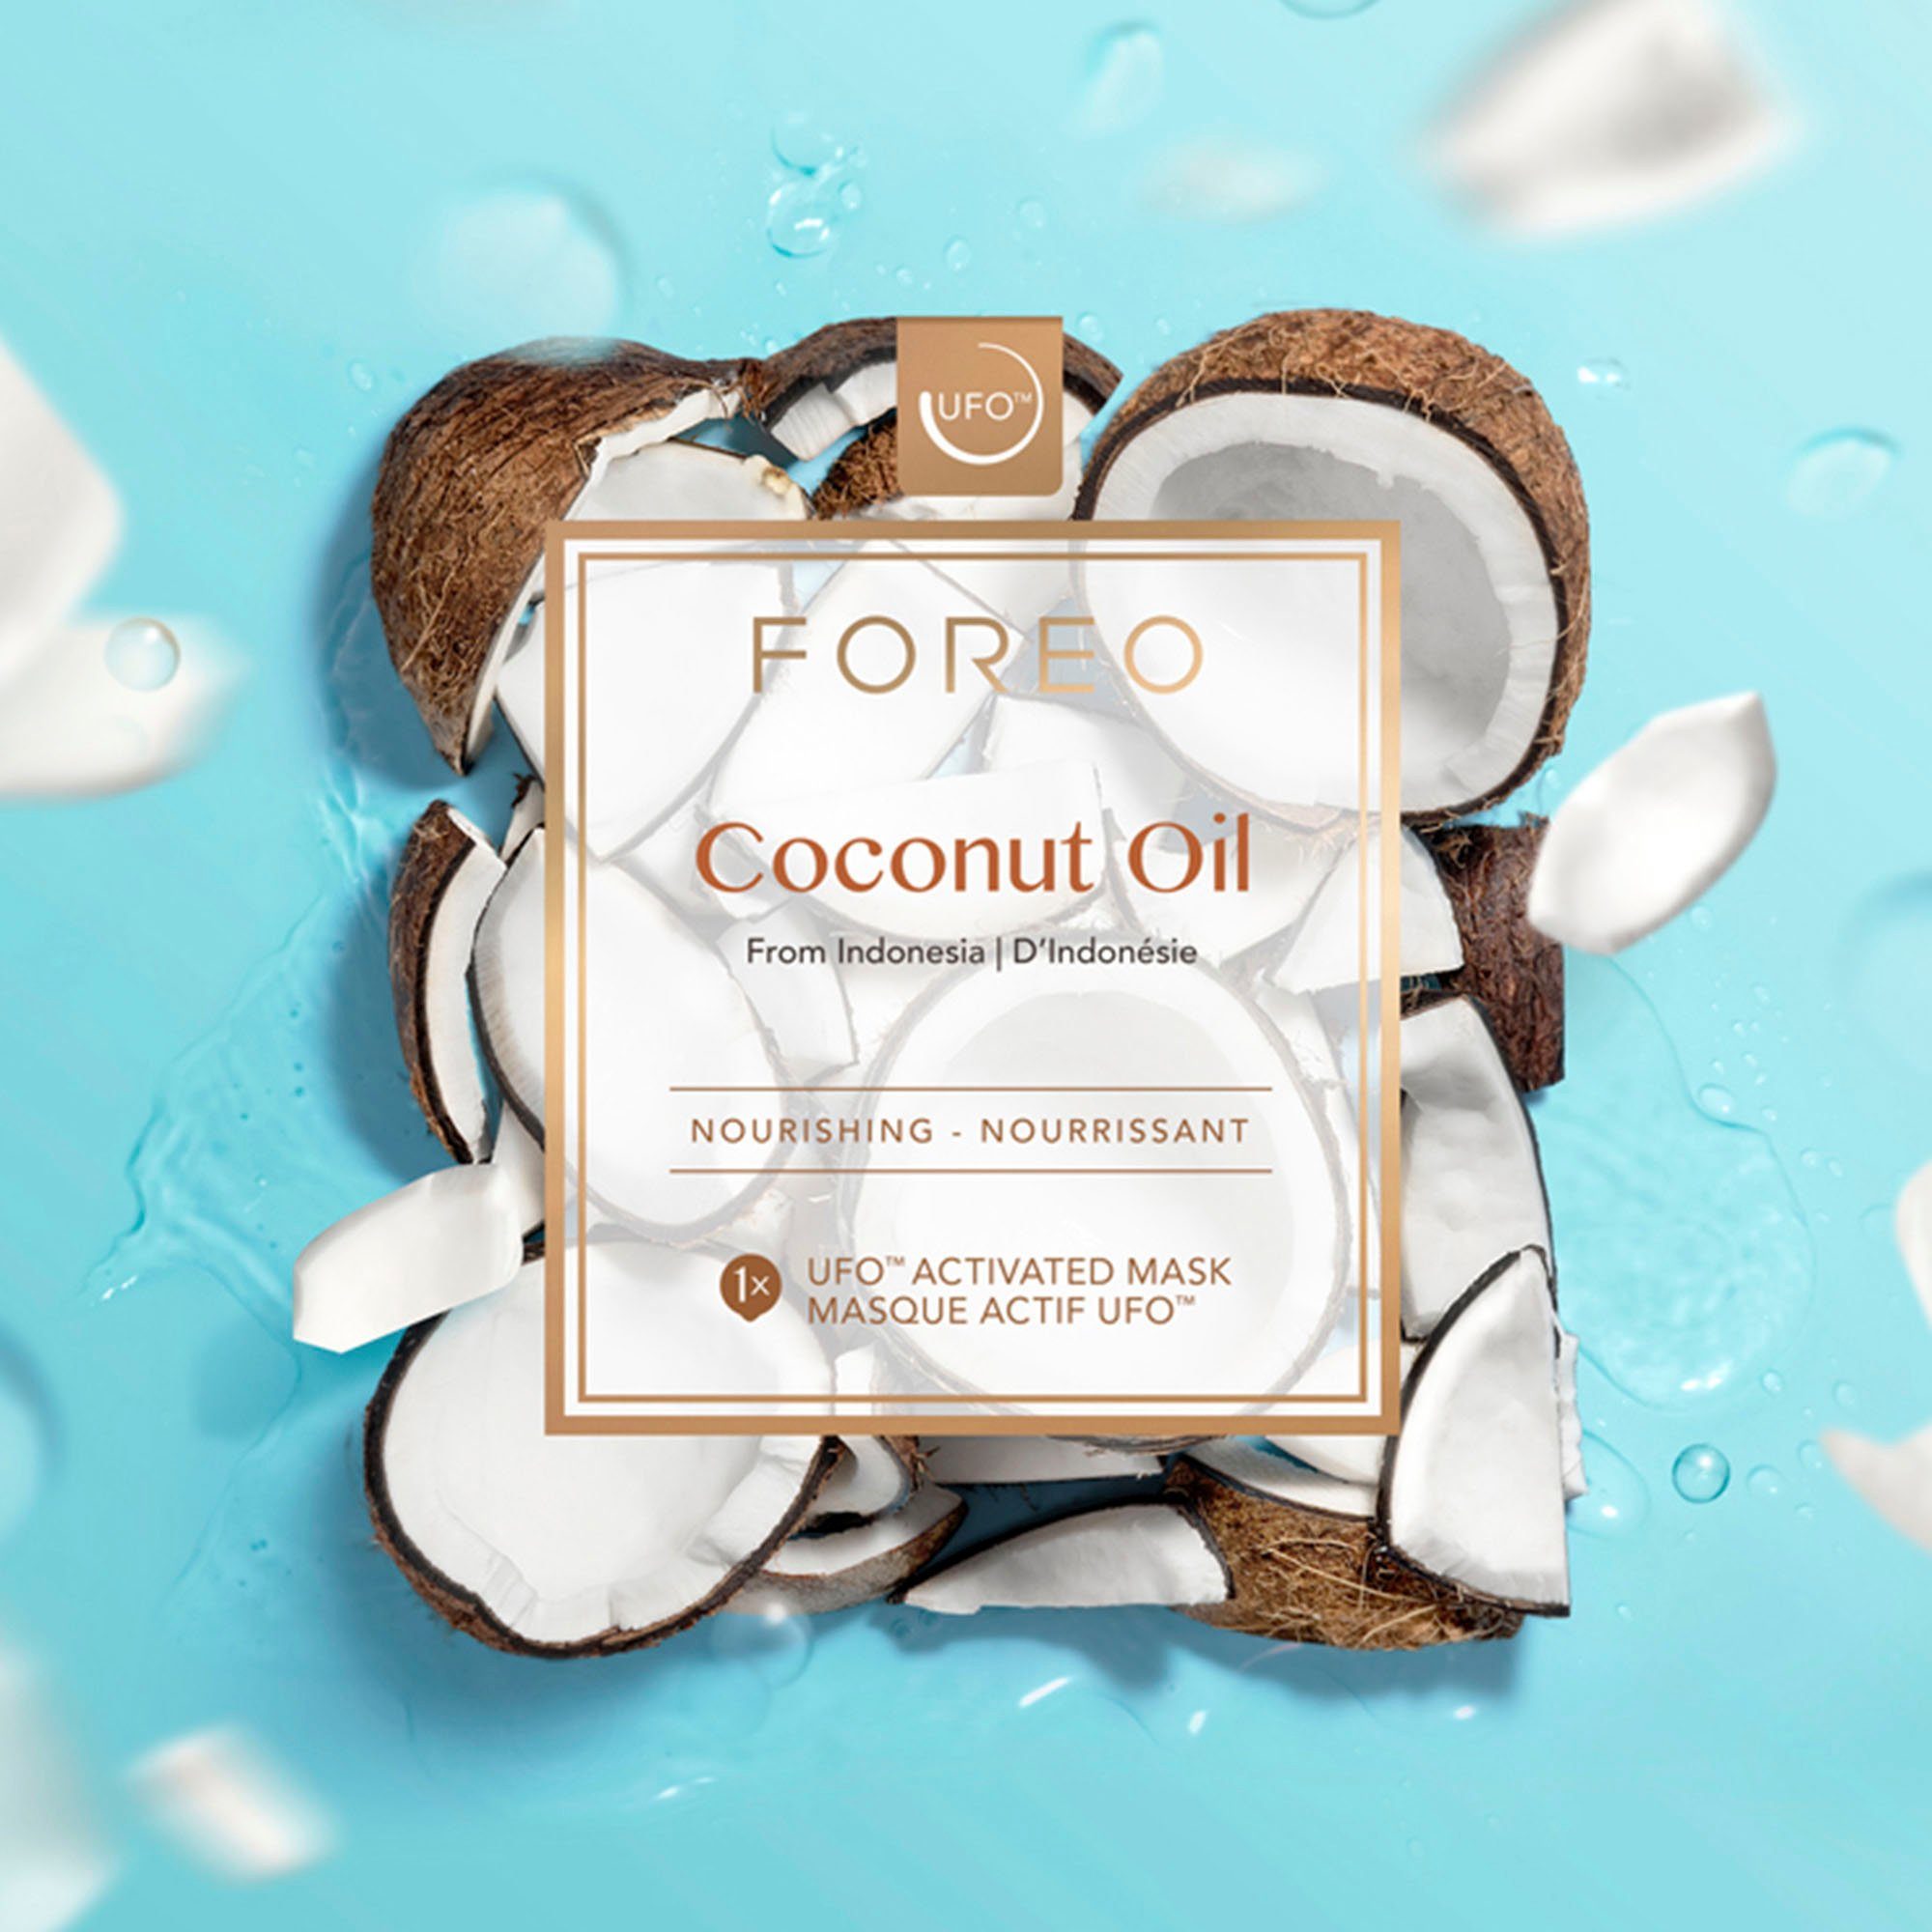 FOREO Gesichtsmaske Foreo ufo mask coconut oil x 6, Feuchtigkeitsspendende  GesichtsmaskIdeal für trockene, dehydrierte